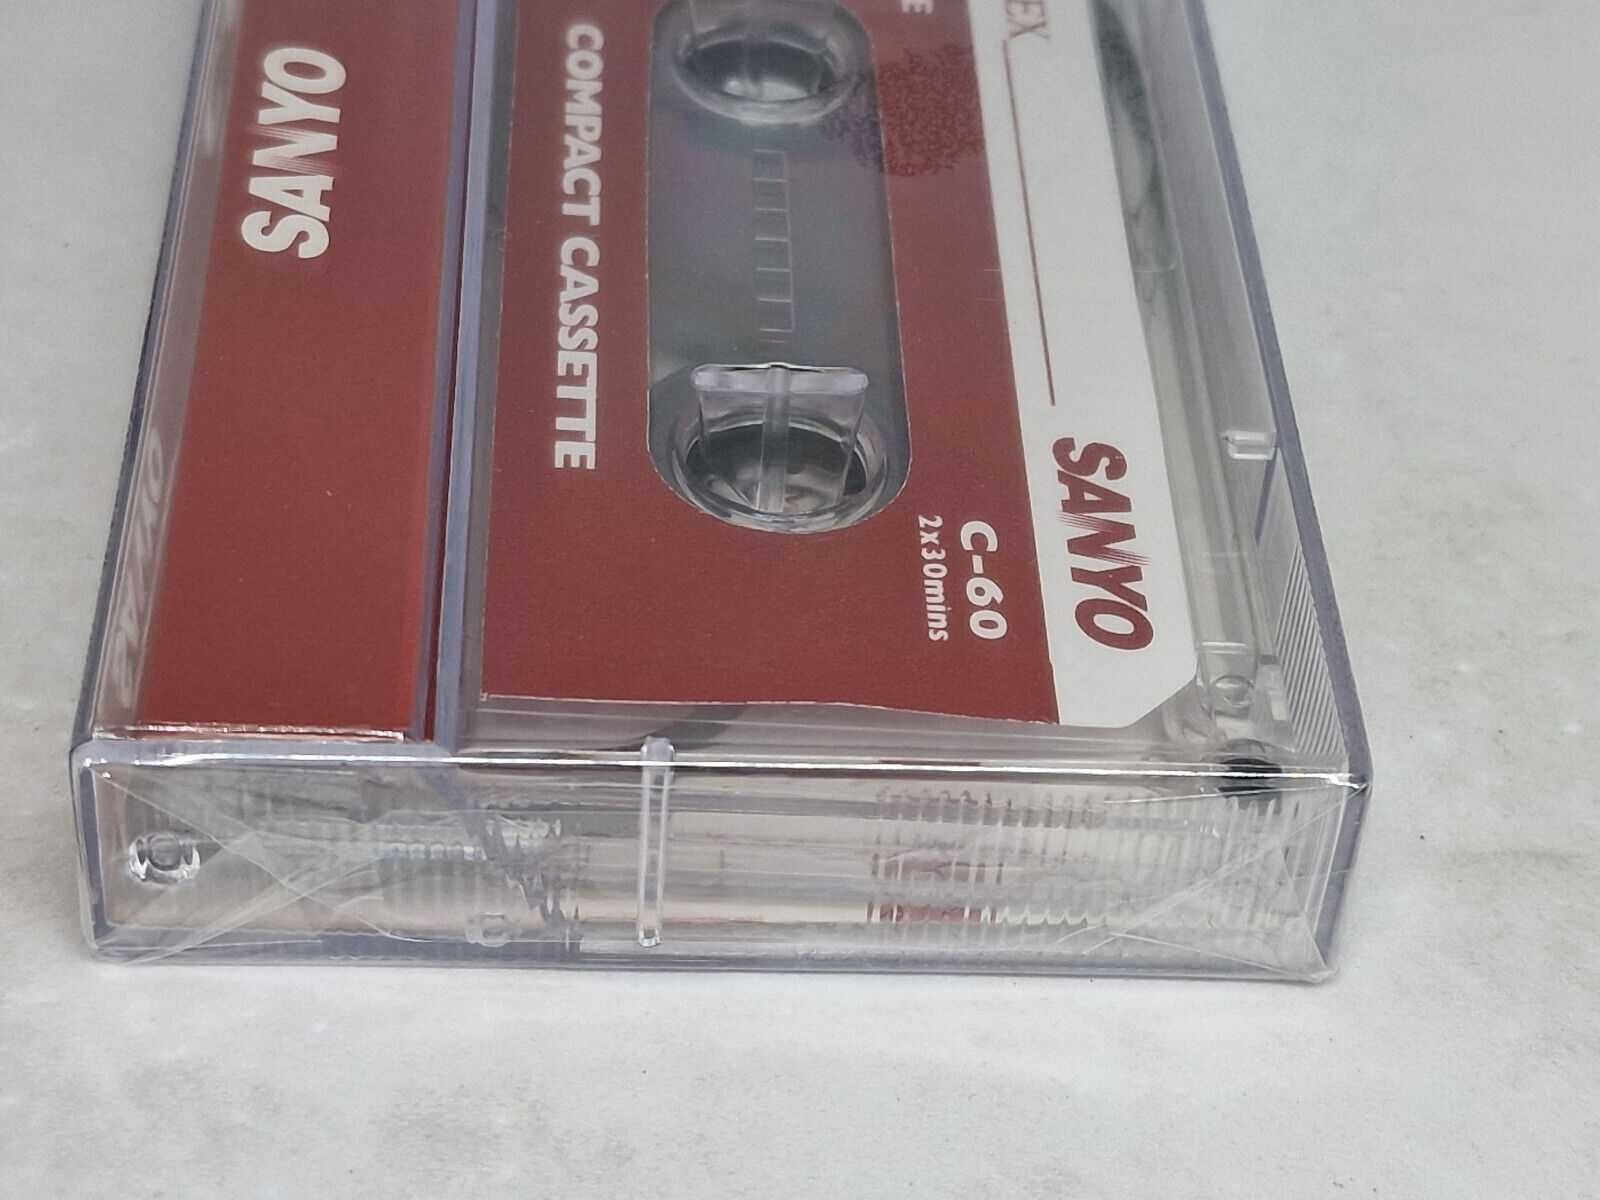 Аудиокассета Sanyo новая в упаковке  кассета